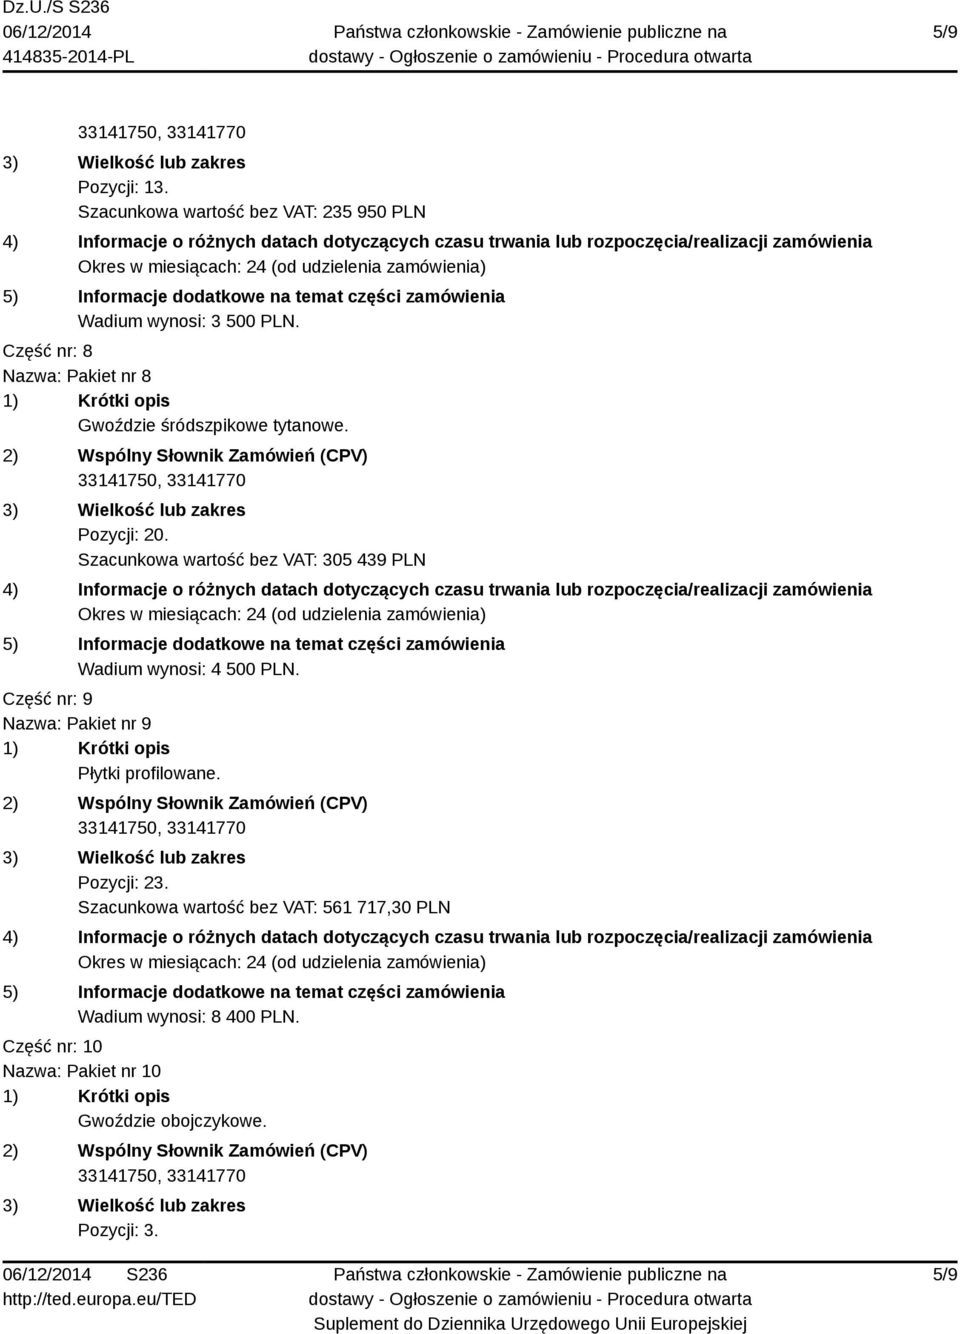 Szacunkowa wartość bez VAT: 305 439 PLN Wadium wynosi: 4 500 PLN.